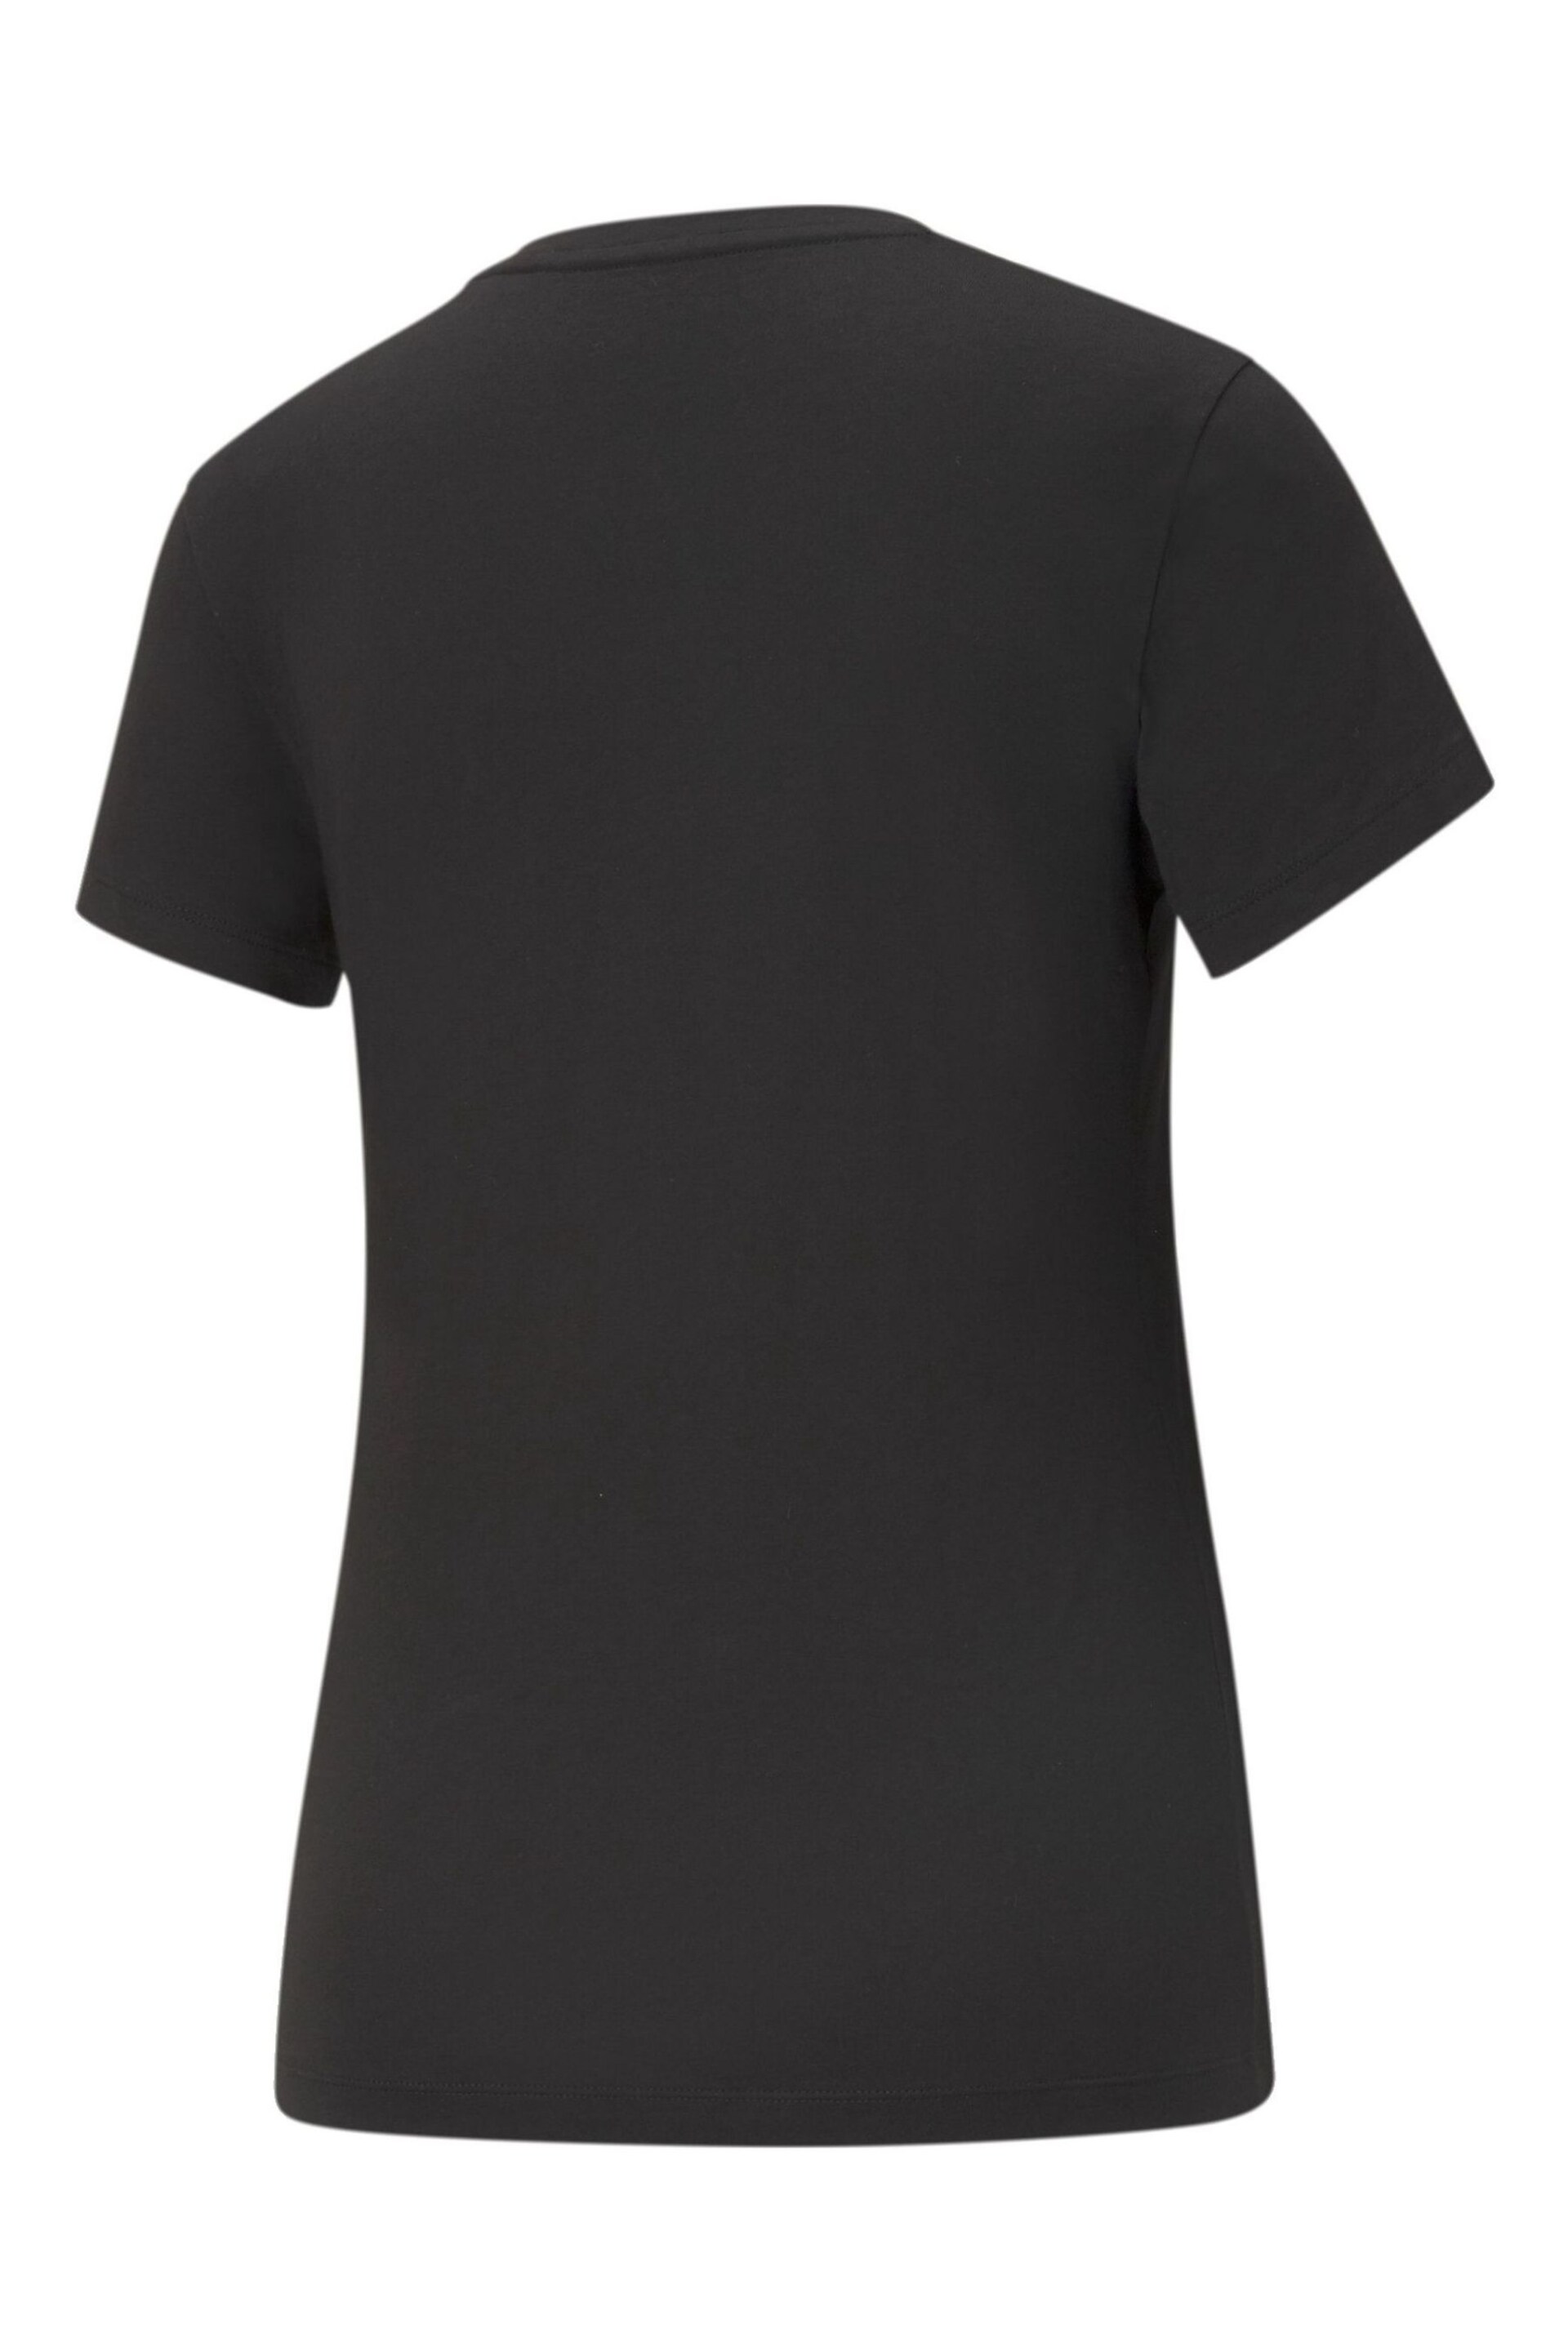 Puma Black ESS Logo T-Shirt - Image 7 of 7